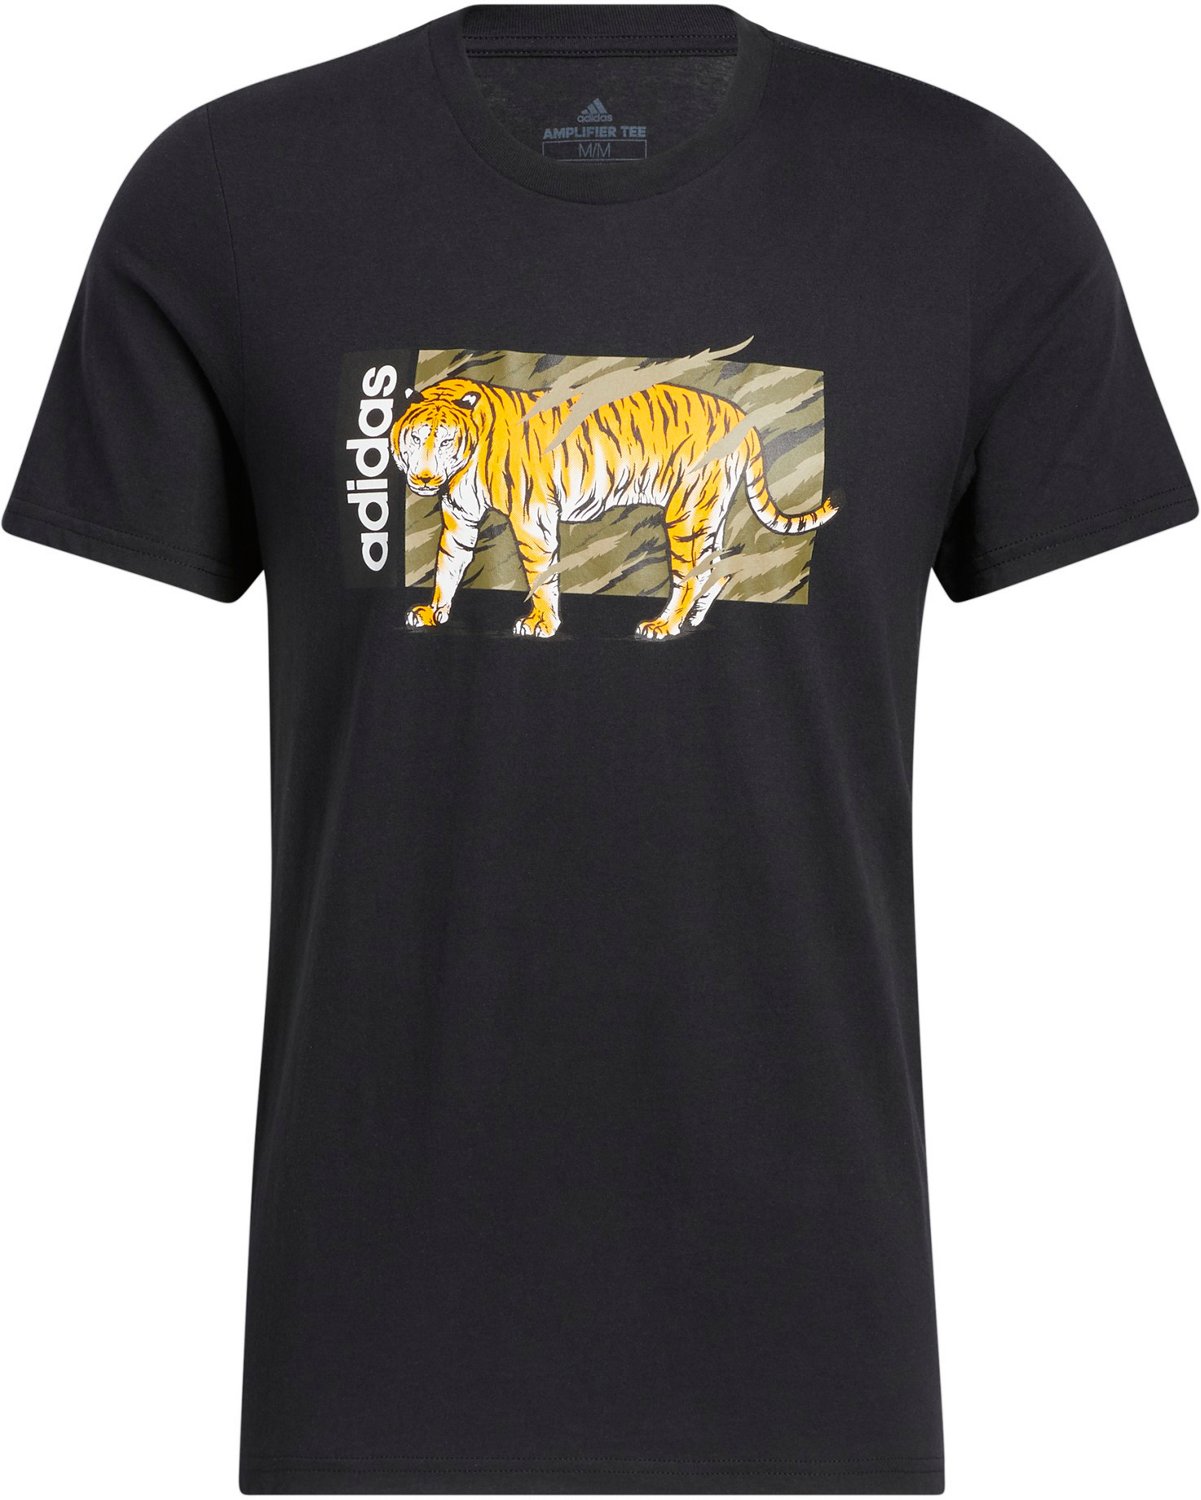 Centimeter Echt Geweldig adidas Men's Tiger Graphic Short Sleeve T-shirt | Academy